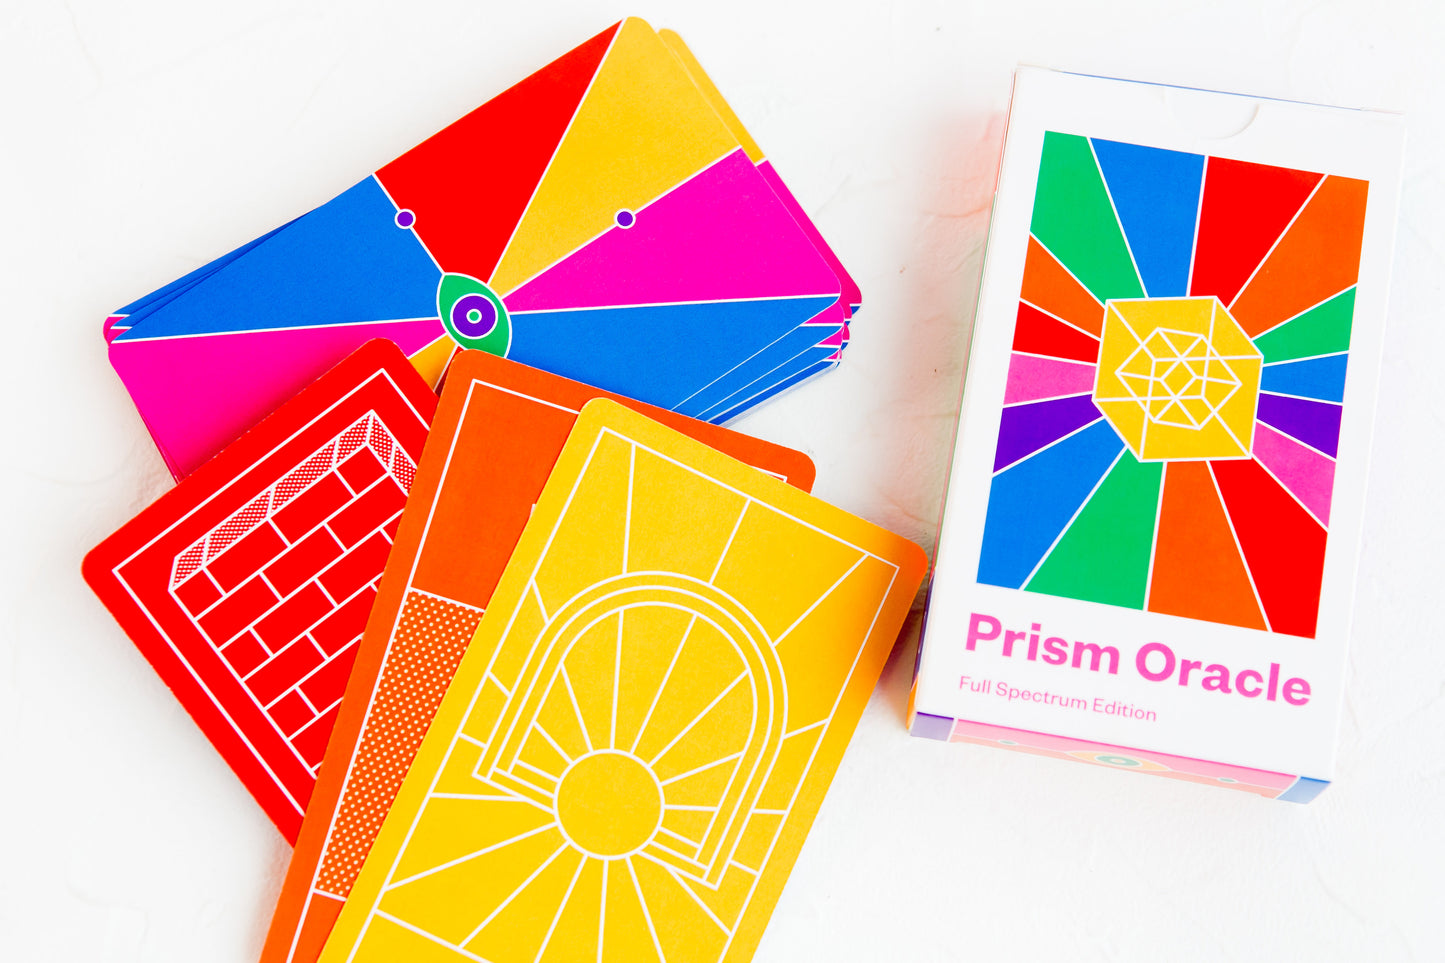 Prism Oracle: Full Spectrum Edition